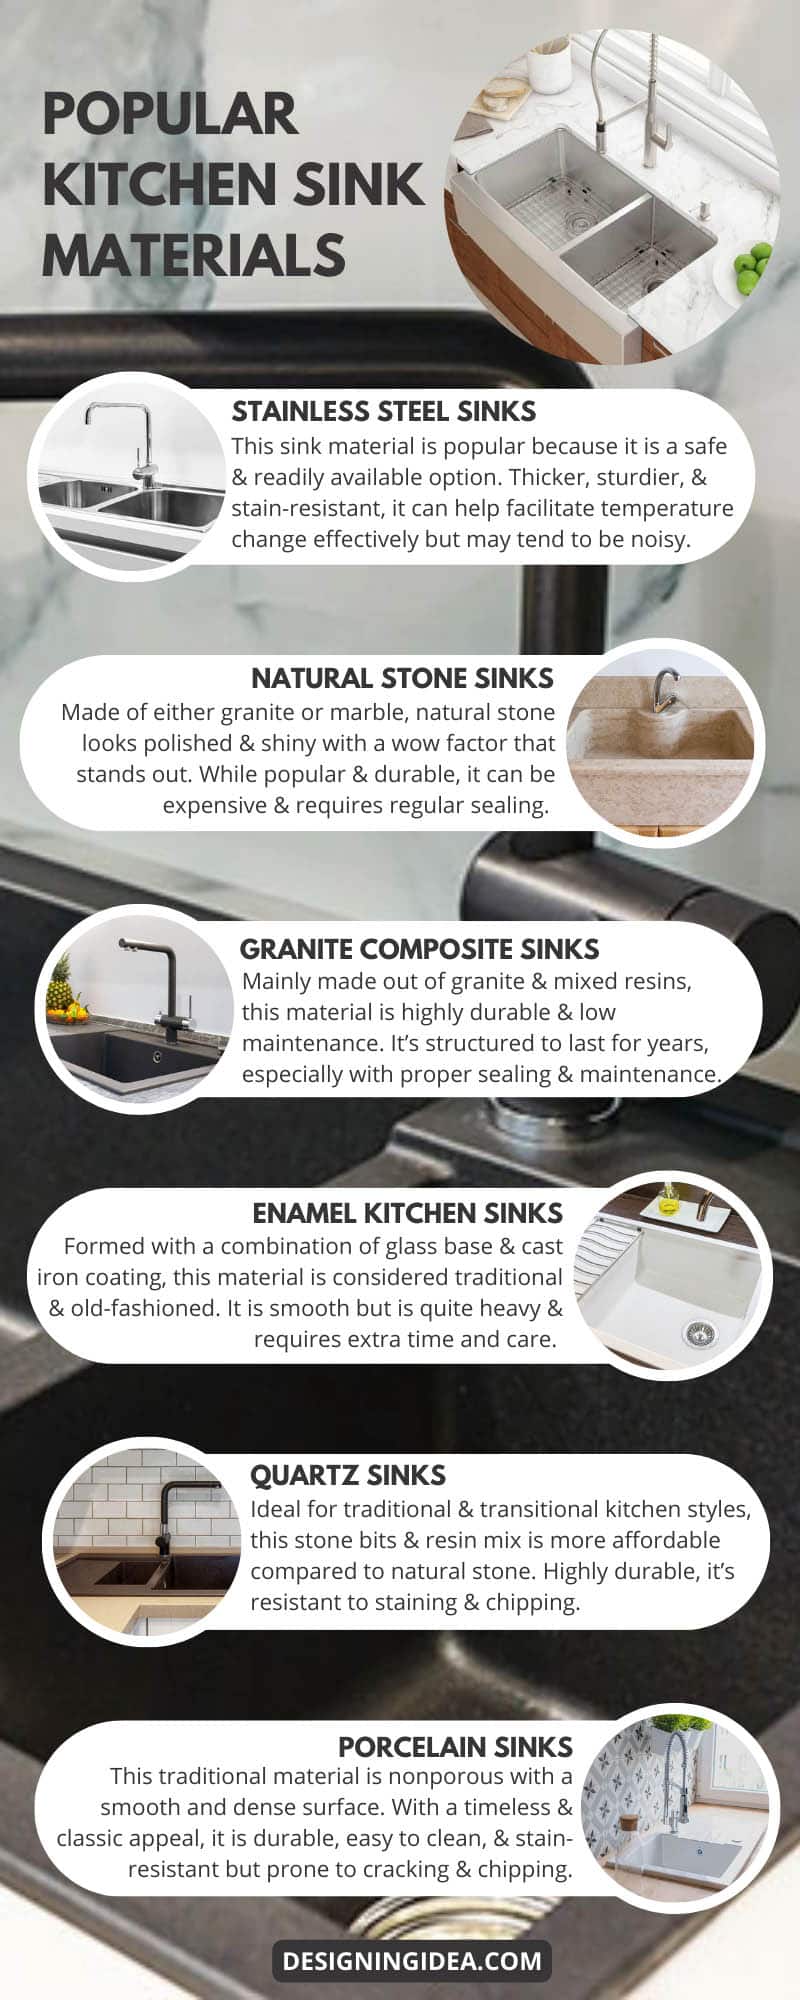 Popular Kitchen Sink Materials Infographic